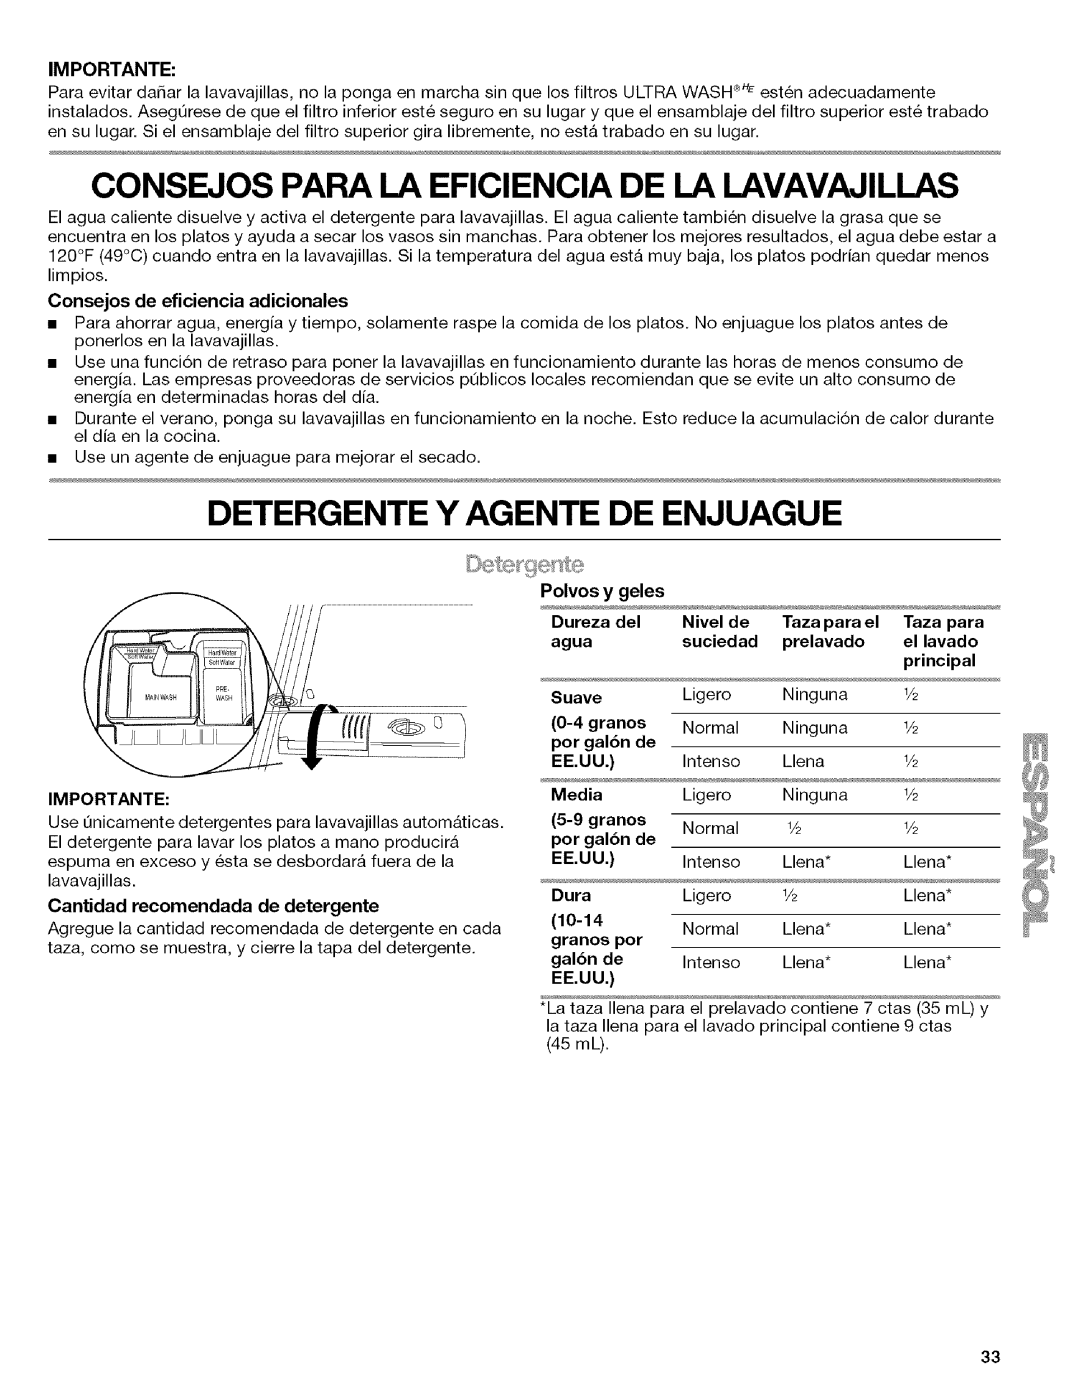 Kenmore 665.1316, W10082930A Consejos Para La Eficiencia De La Lavavajillas, Detergente Y Agente De Enjuague, Importante 